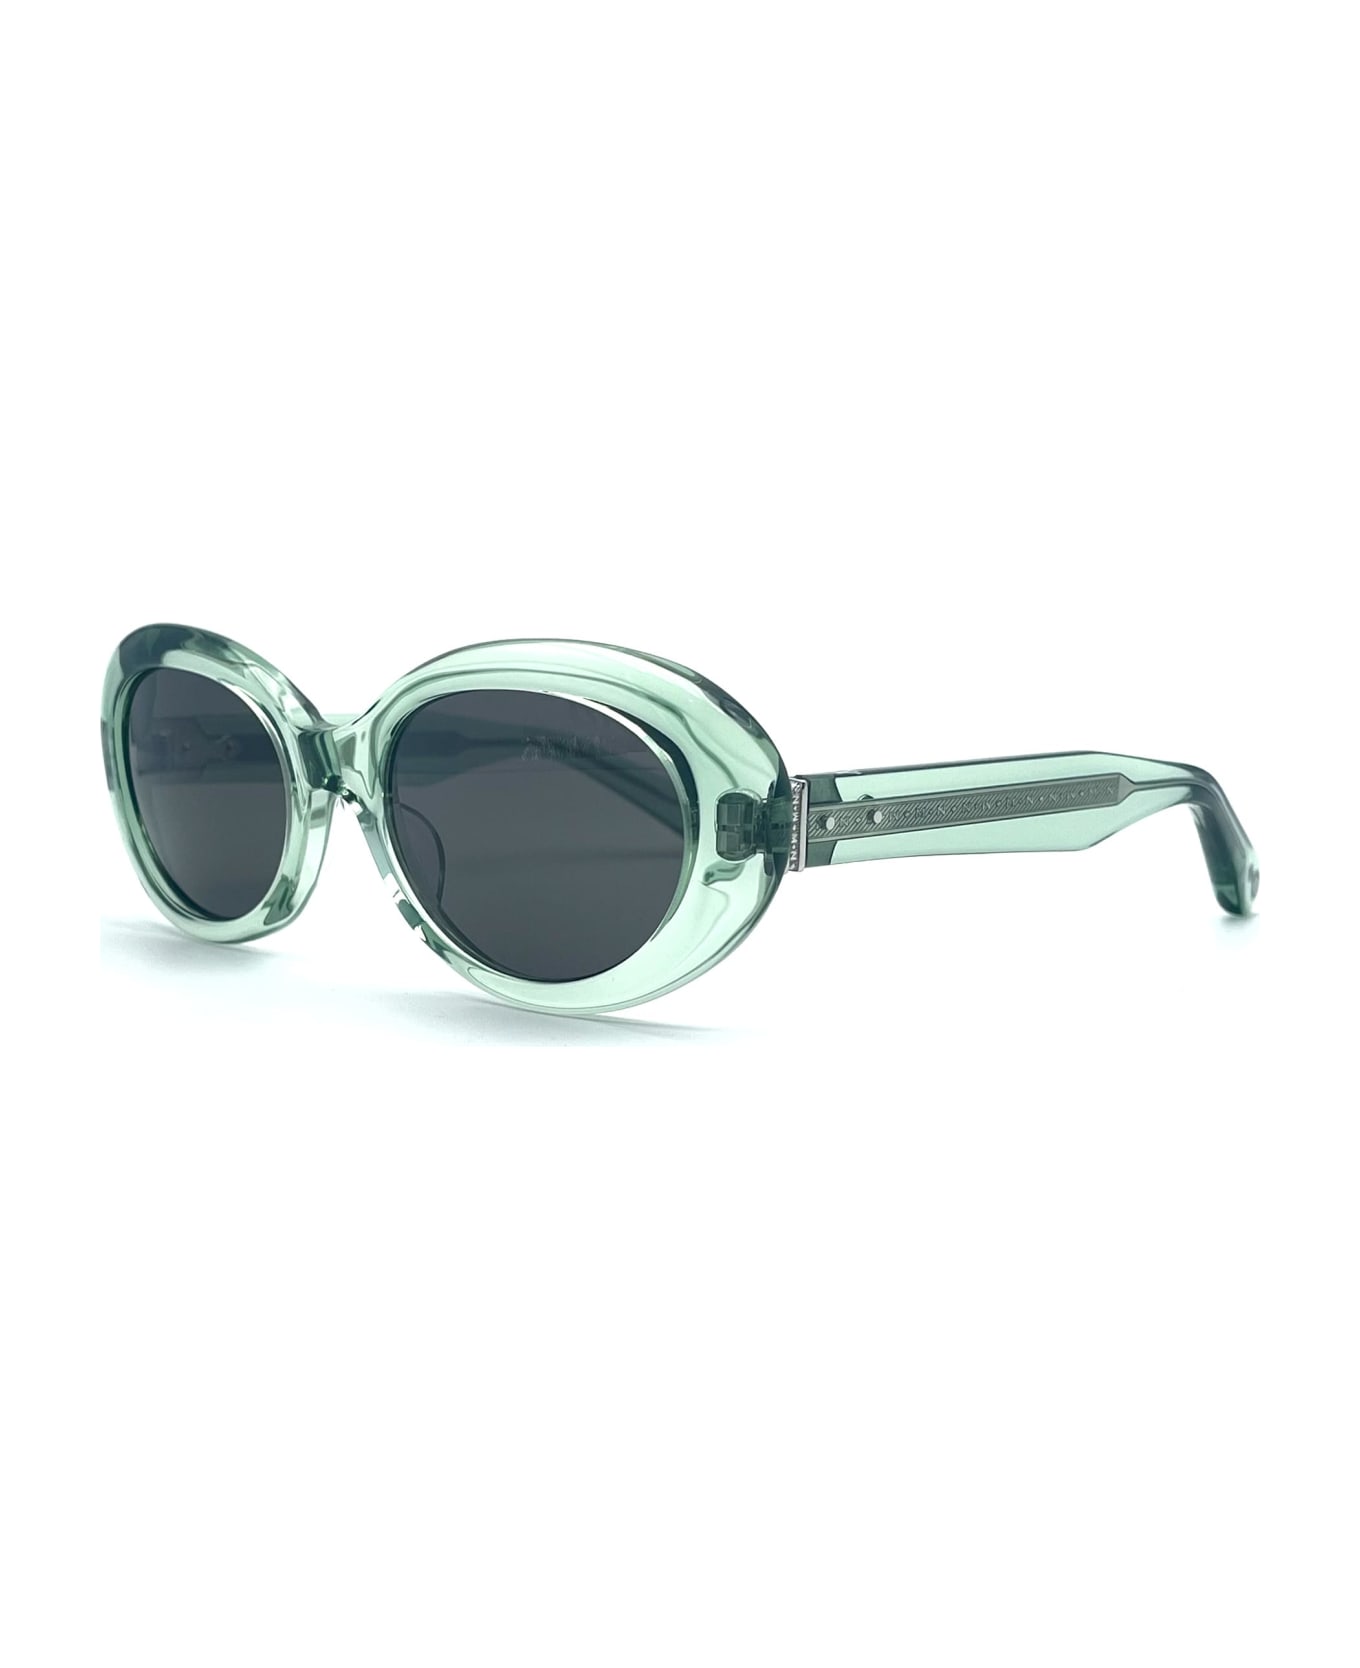 Matsuda M1034 - Mint Sunglasses - mint green サングラス